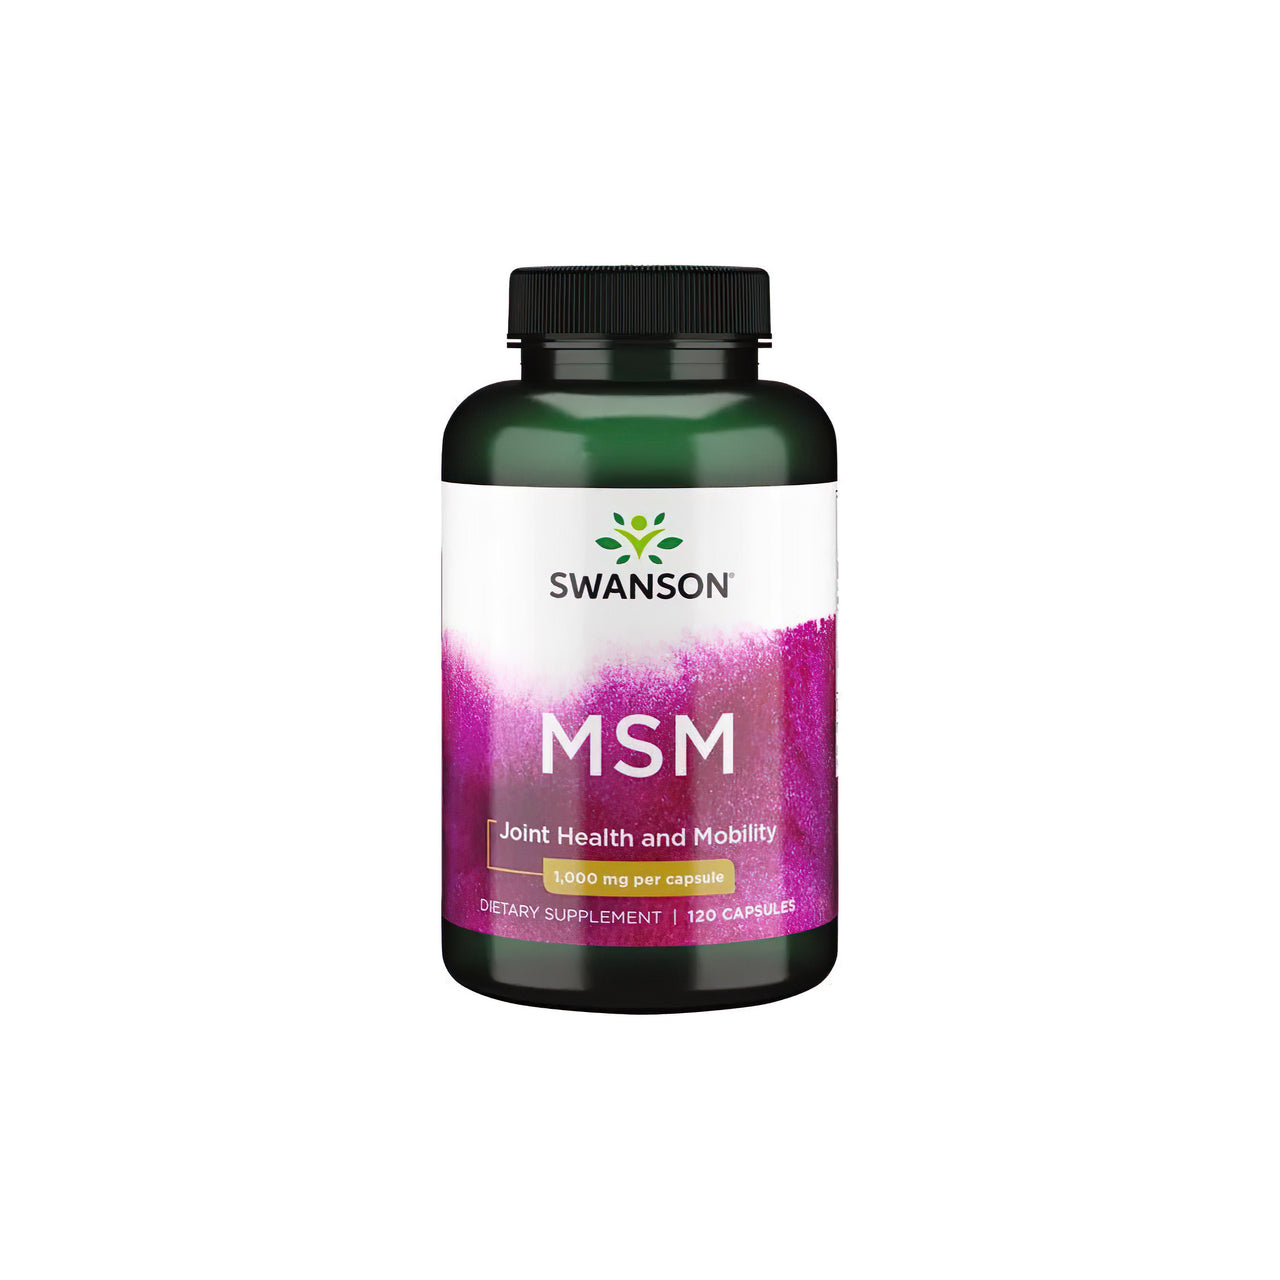 Eine Flasche Swanson MSM 1000 mg 120 Kapseln, die speziell für die Gesundheit der Gelenke und des Bindegewebes entwickelt wurde, steht auf einem sauberen weißen Hintergrund.